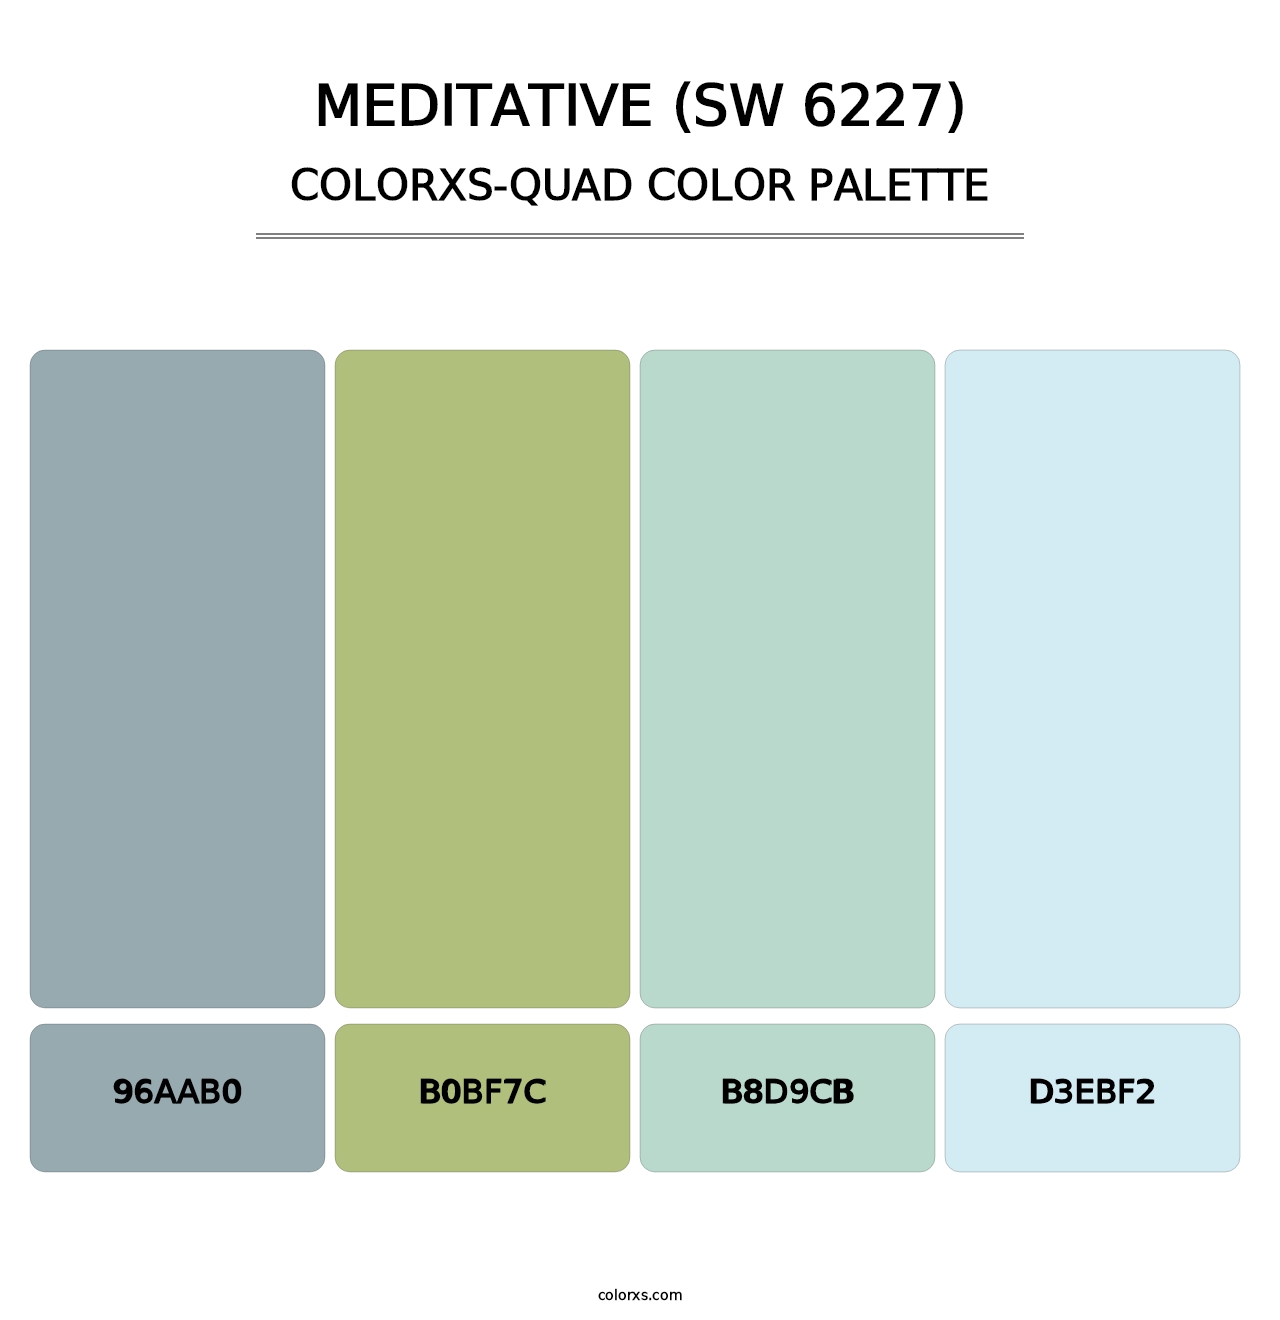 Meditative (SW 6227) - Colorxs Quad Palette